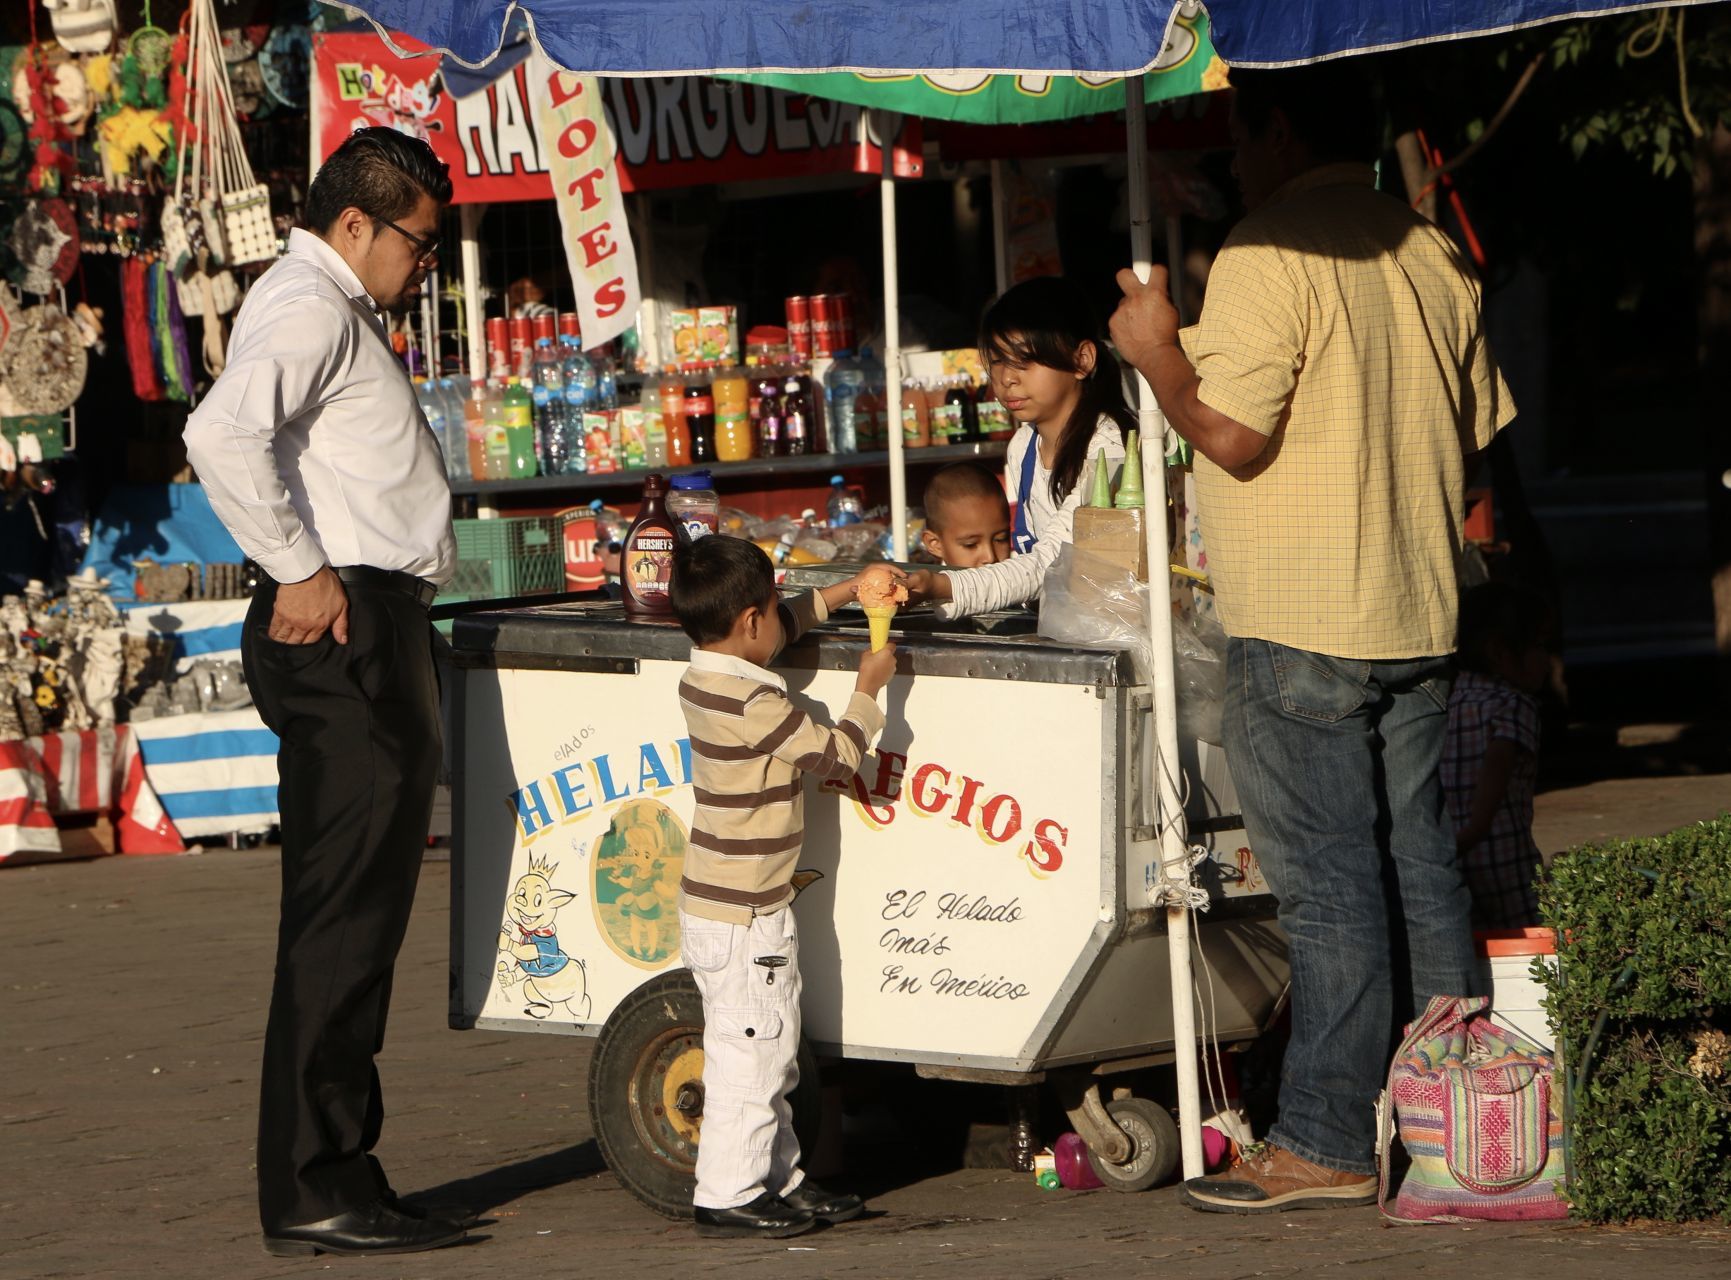 México ocupa el primer lugar en obesidad infantil, según la Encuesta Nacional de Salud y Nutrición, uno de cada tres adolescentes presenta sobrepeso u obesidad.
FOTO: ROGELIO MORALES /CUARTOSCURO.COM